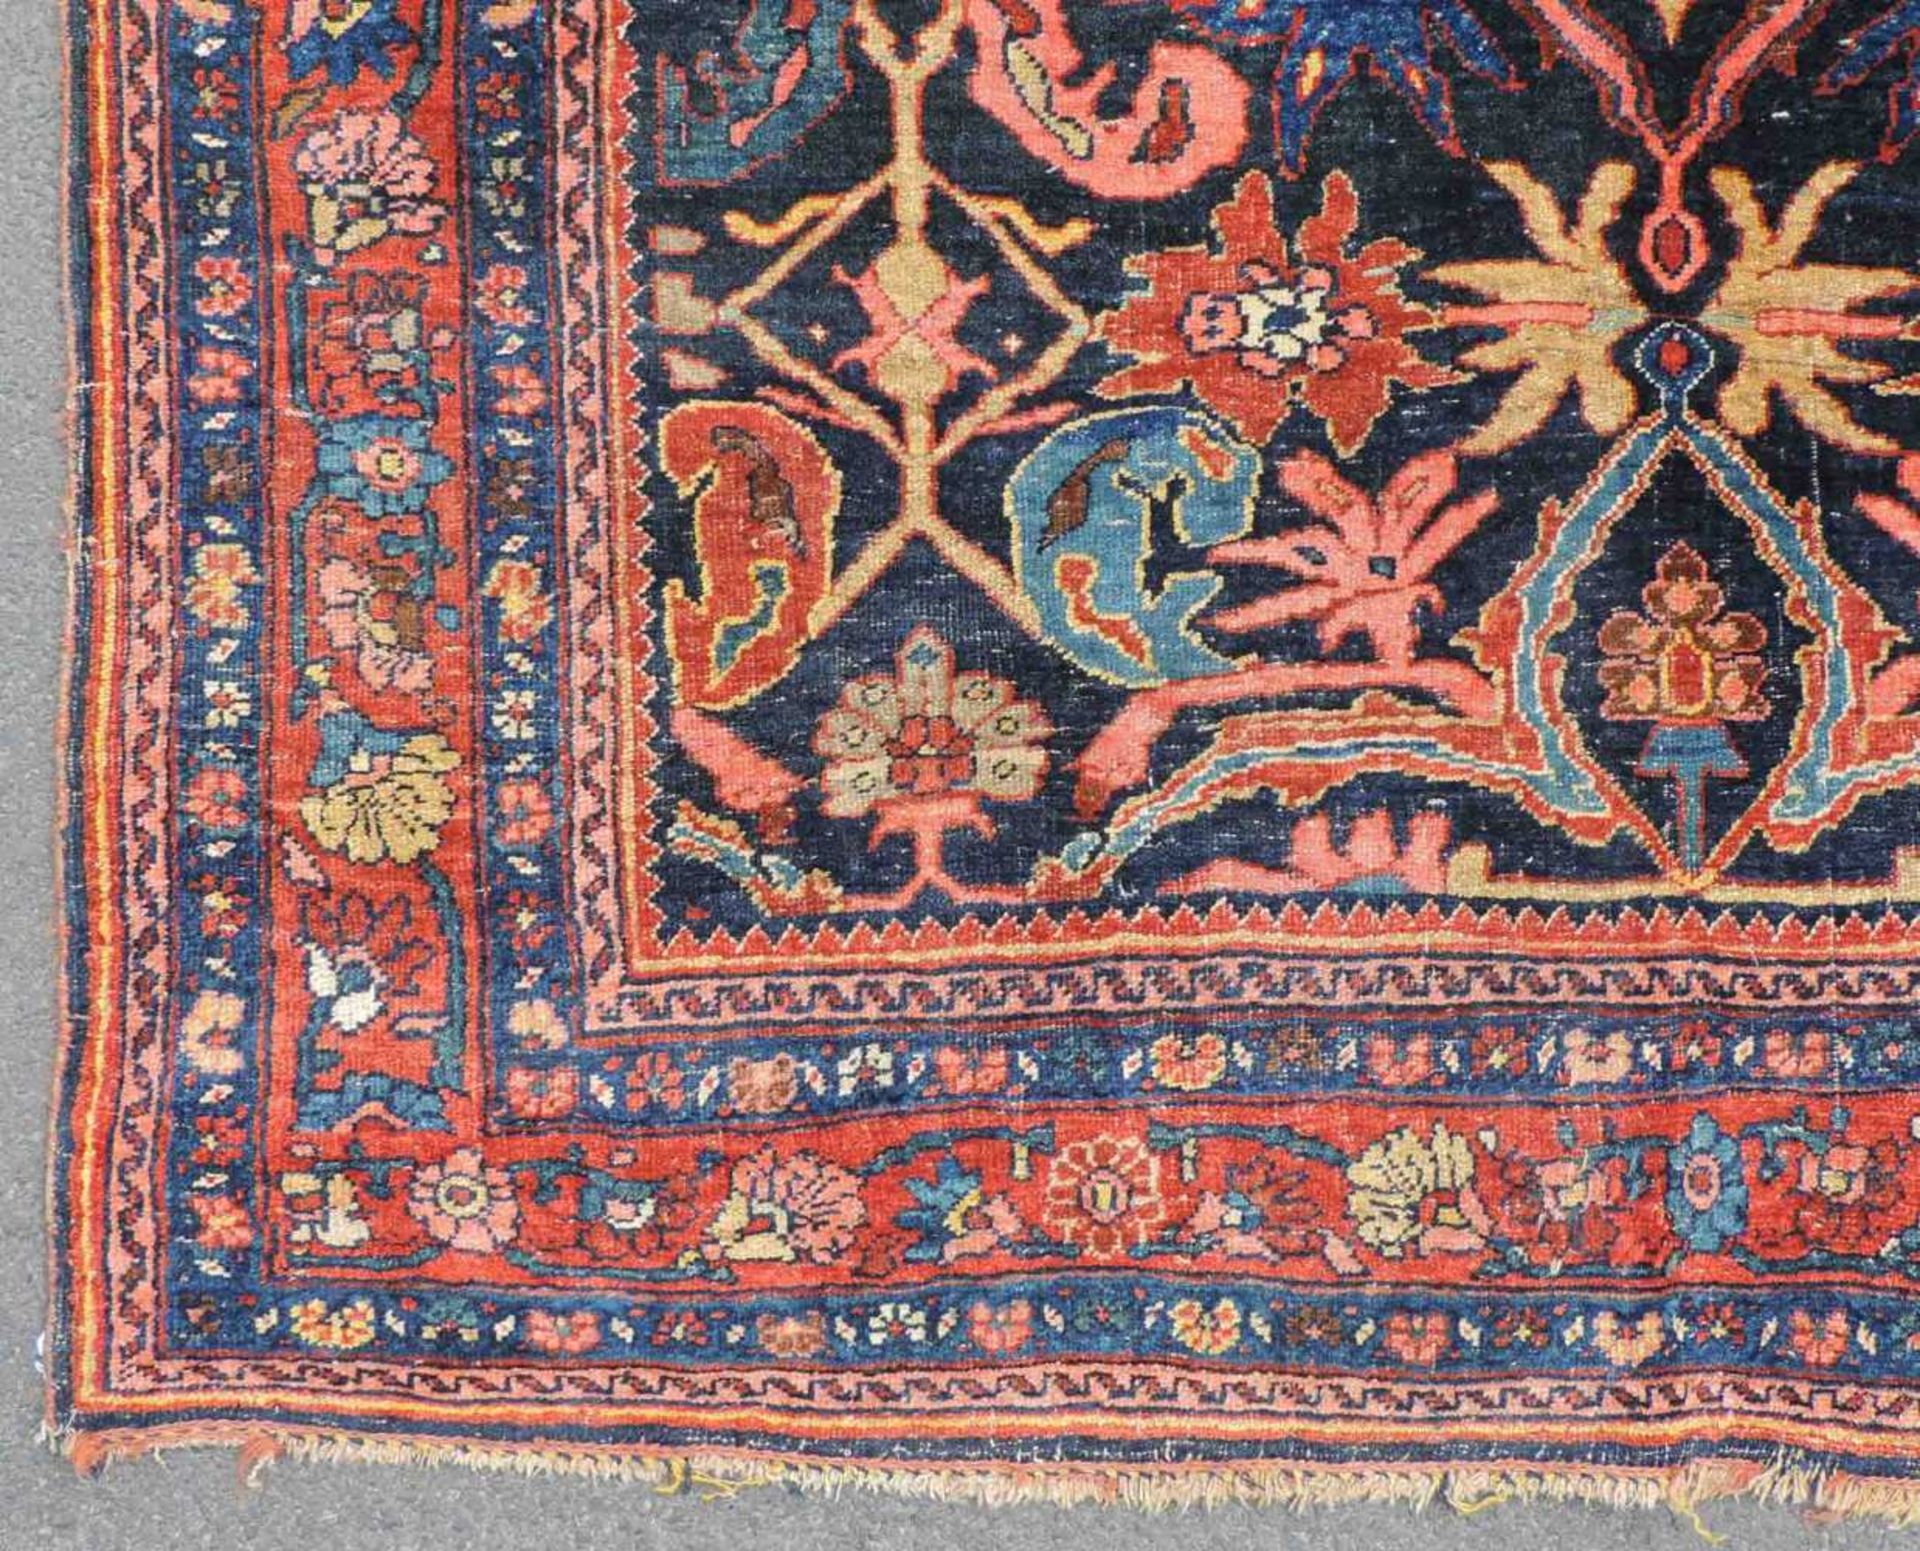 Bidjar Dorfteppich, Iran. Antik, um 1900. 214 cm x 160 cm. Handgeknüpft in Persien. Noch Wolle auf - Image 4 of 11